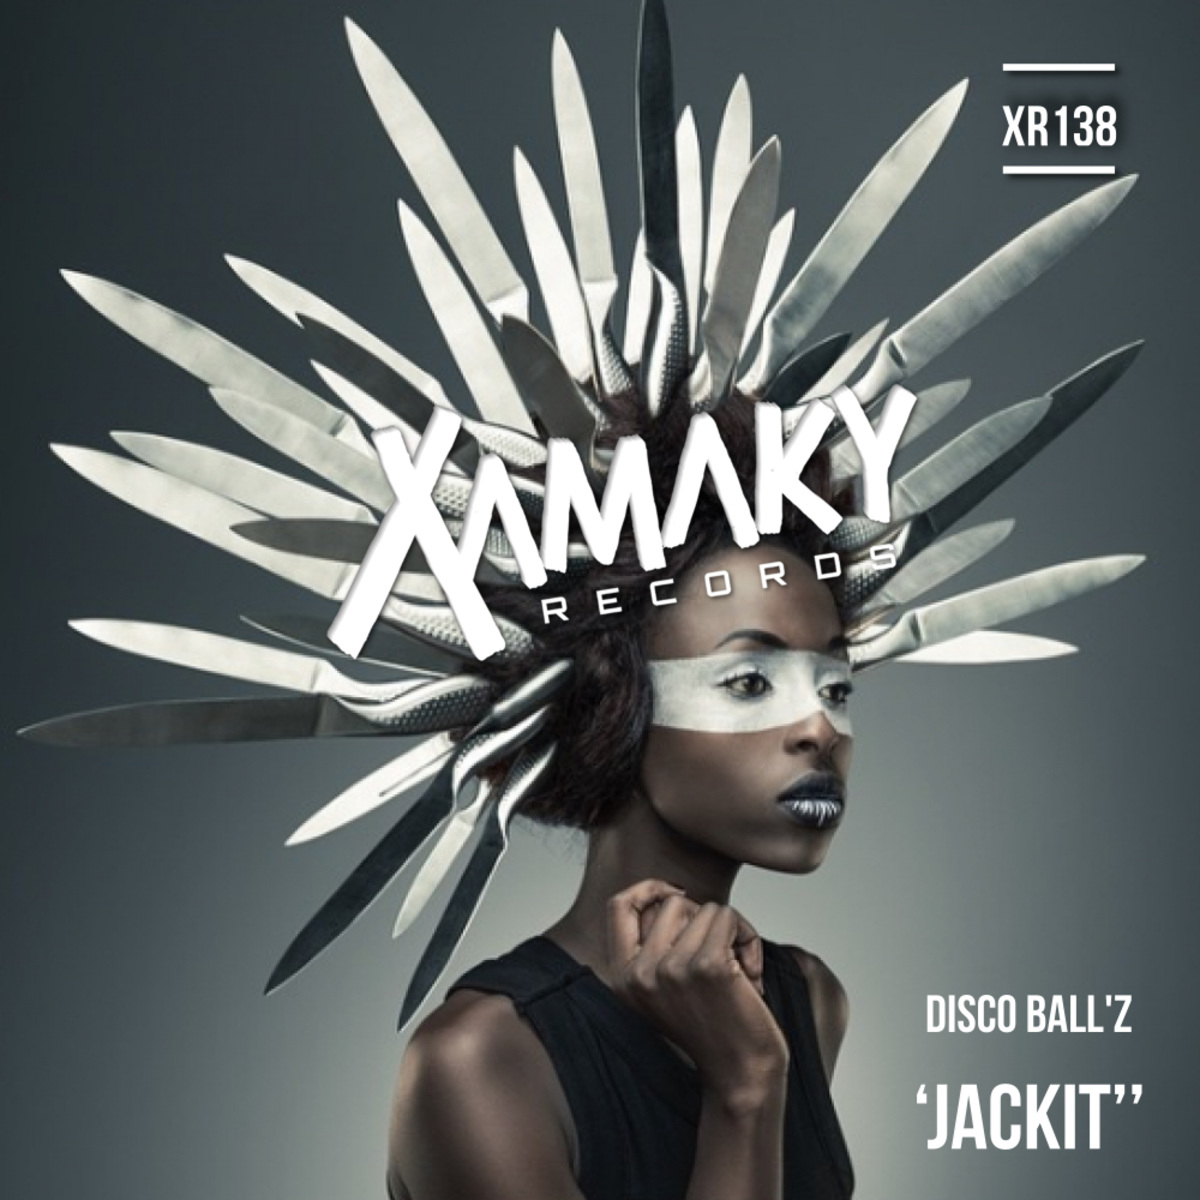 Disco Ball'z - Jackit / Xamaky Records